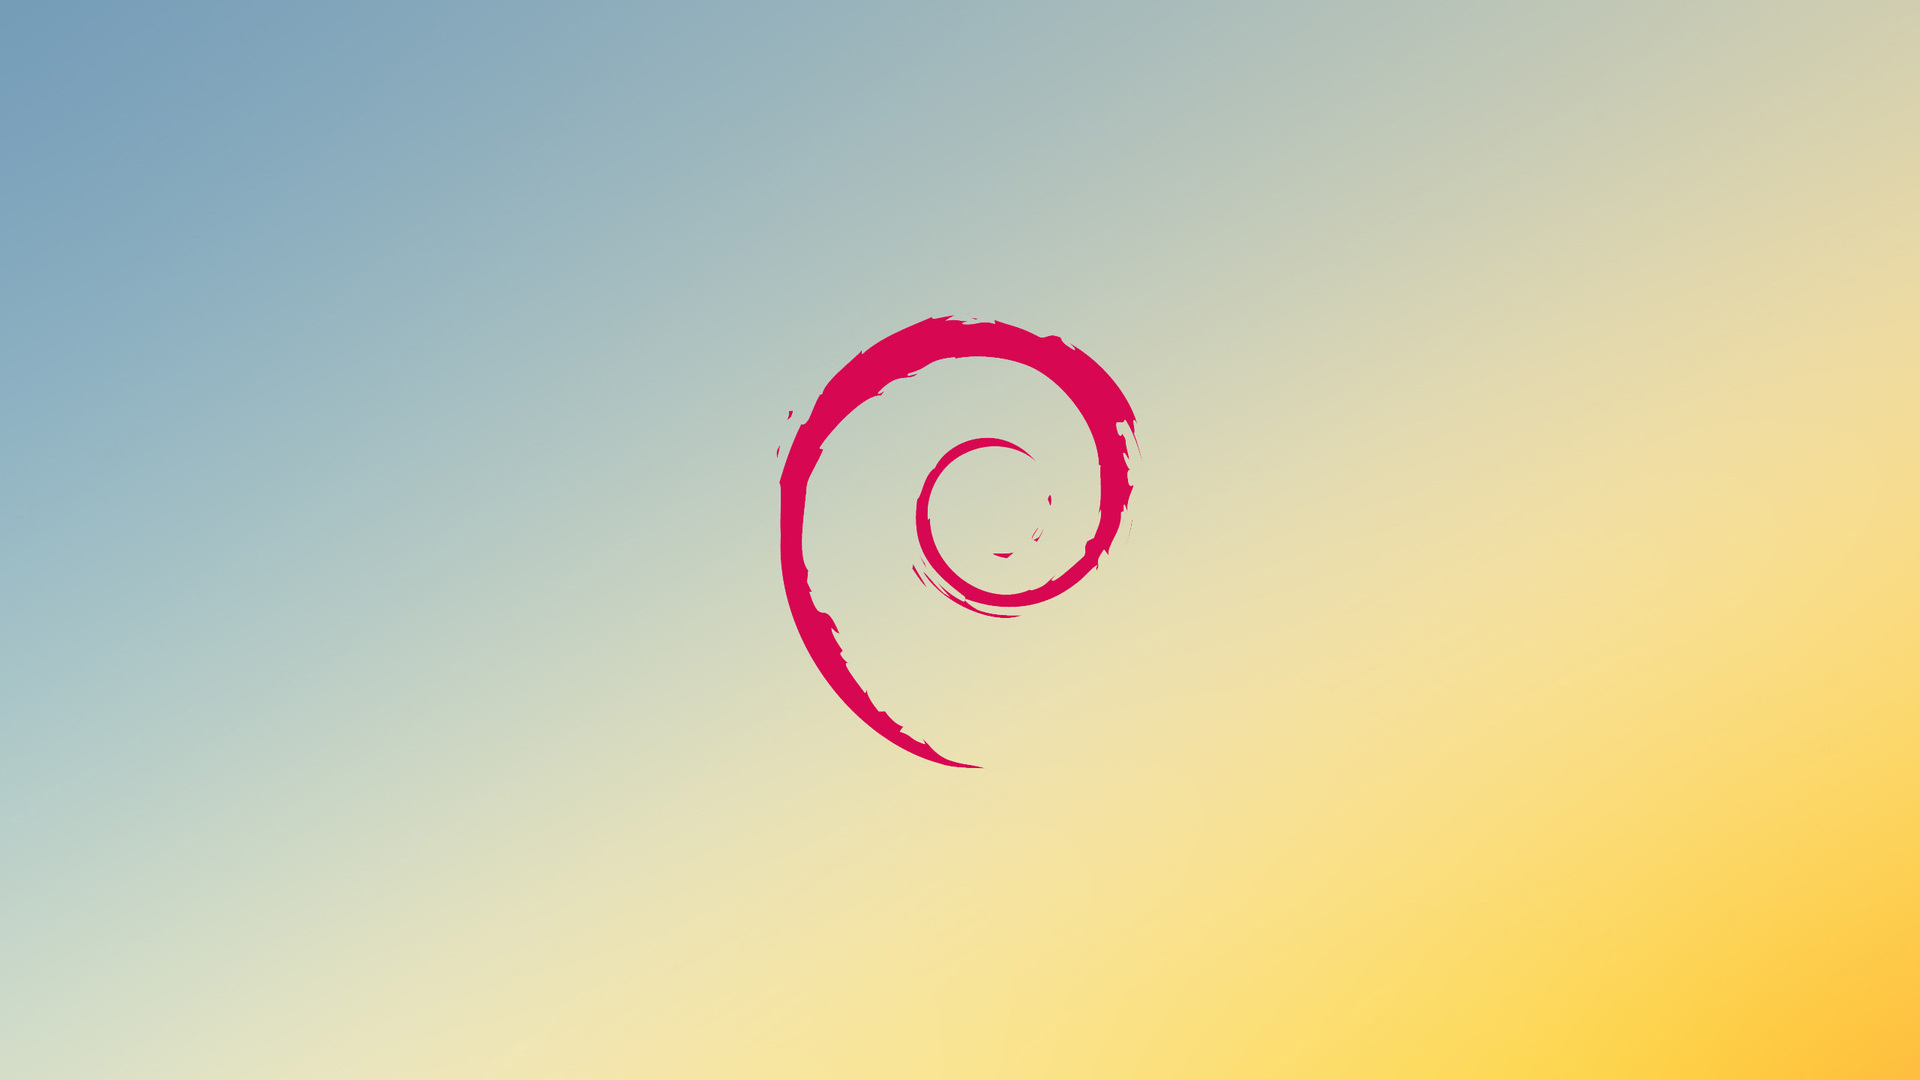 Cosa significa il termine del supporto alle architetture i386 annunciato da Debian